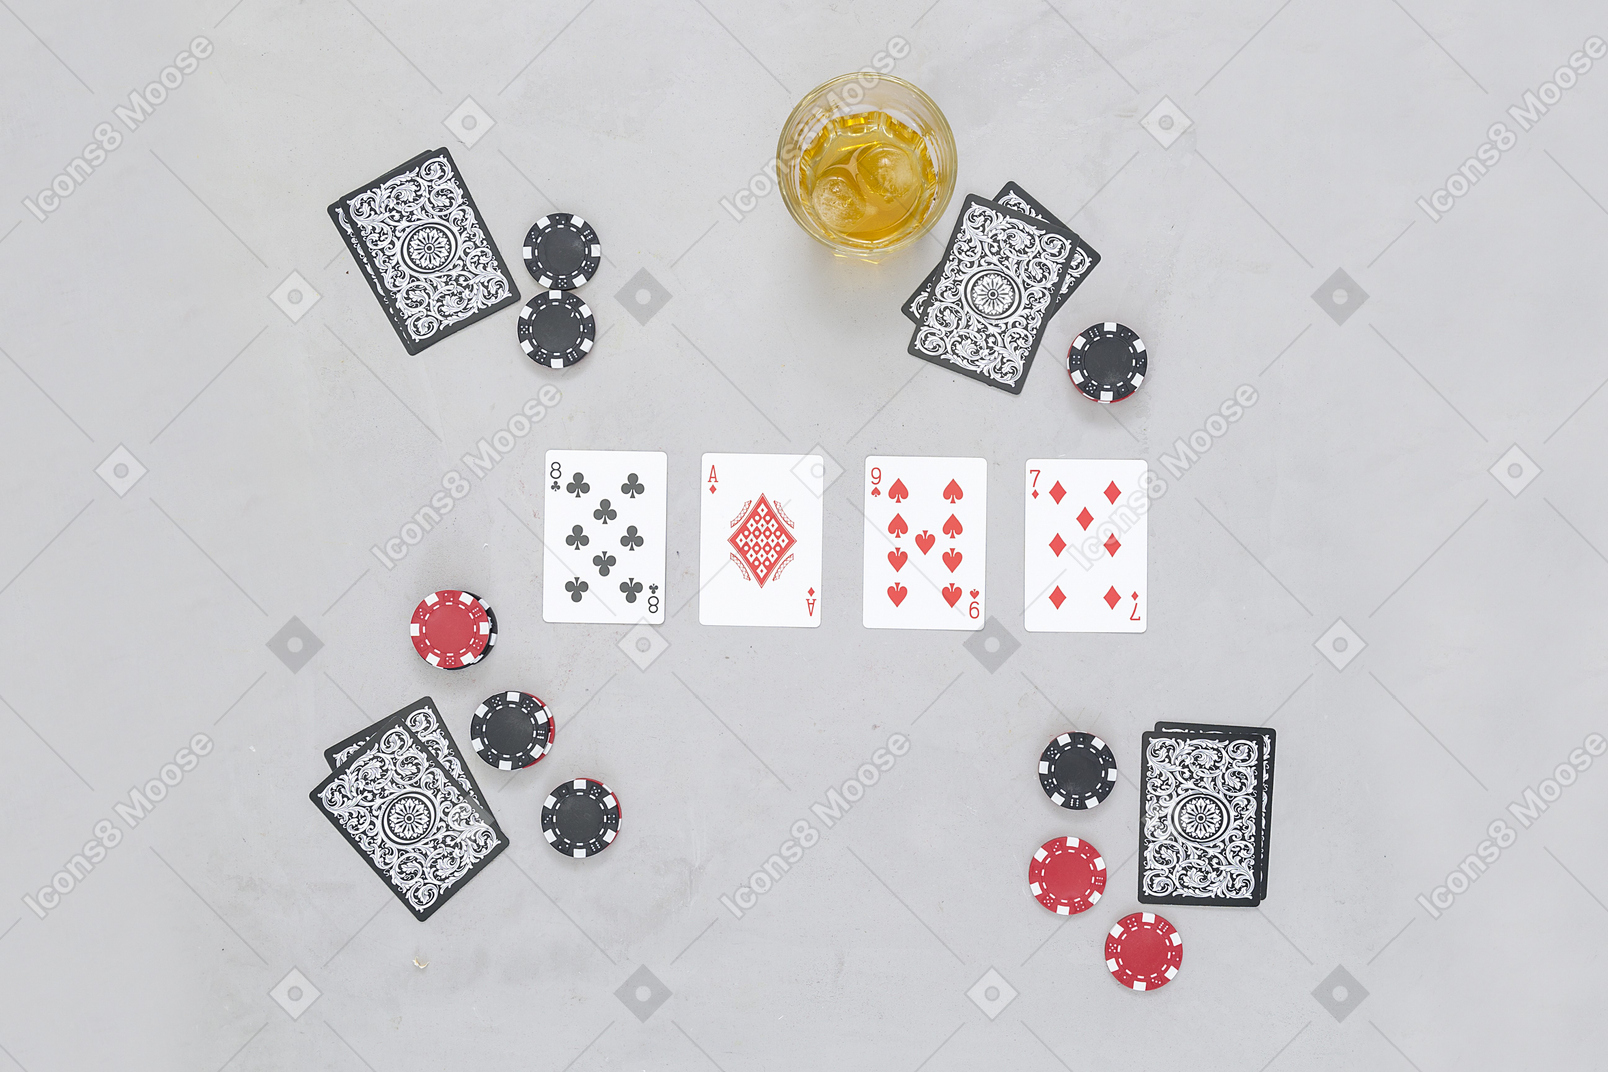 Jeux de cartes sont intéressants à jouer dans